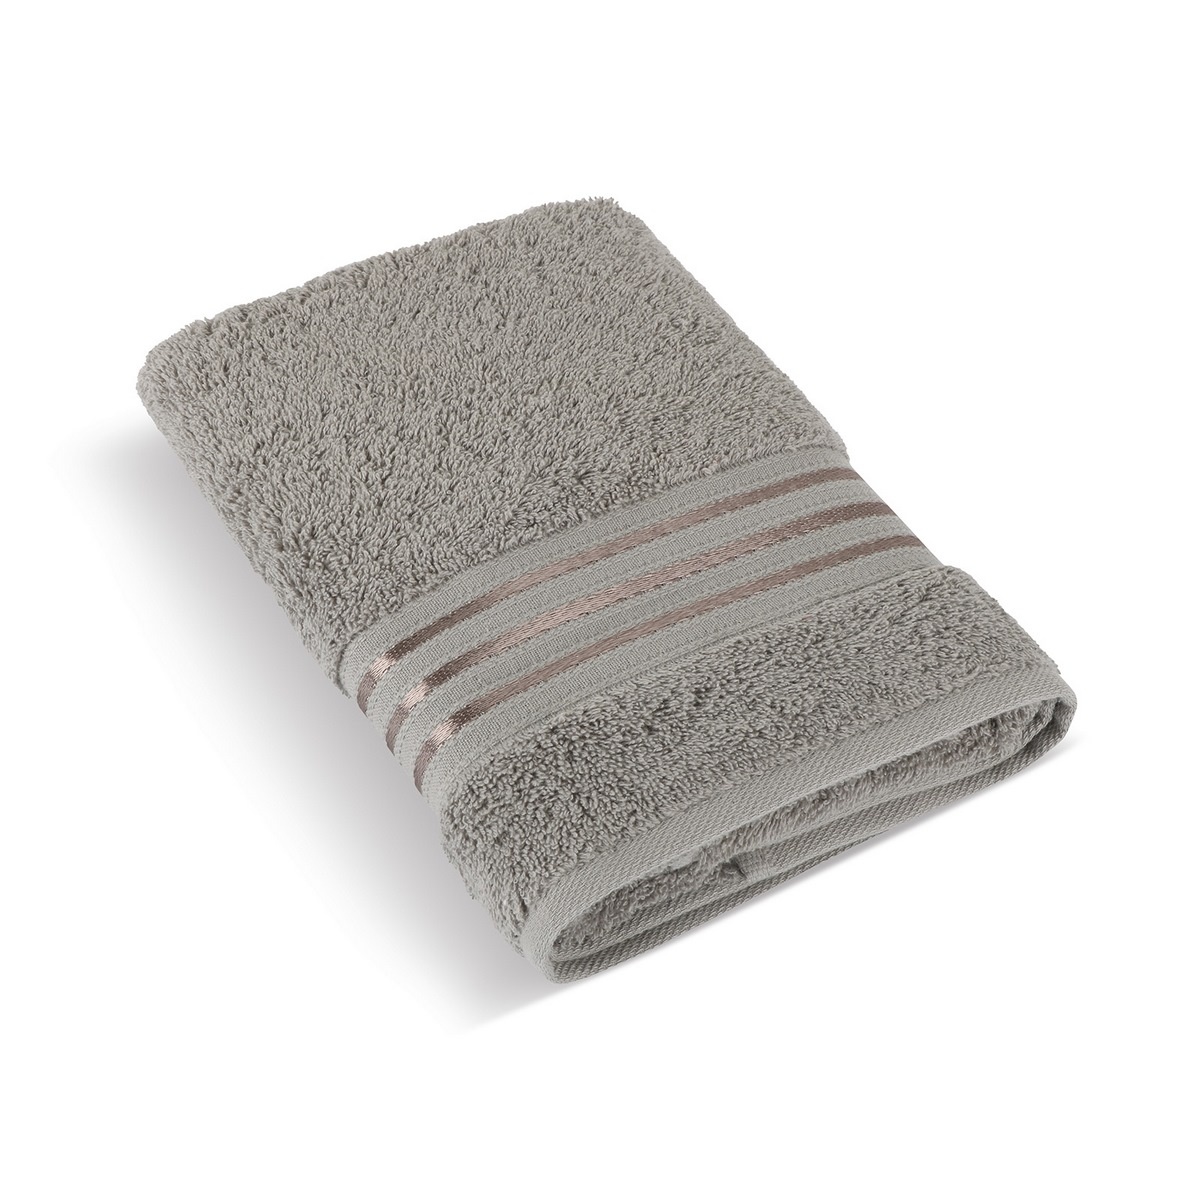 Bellatex Froté ručník kolekce Linie tmavě šedá, 50 x 100 cm